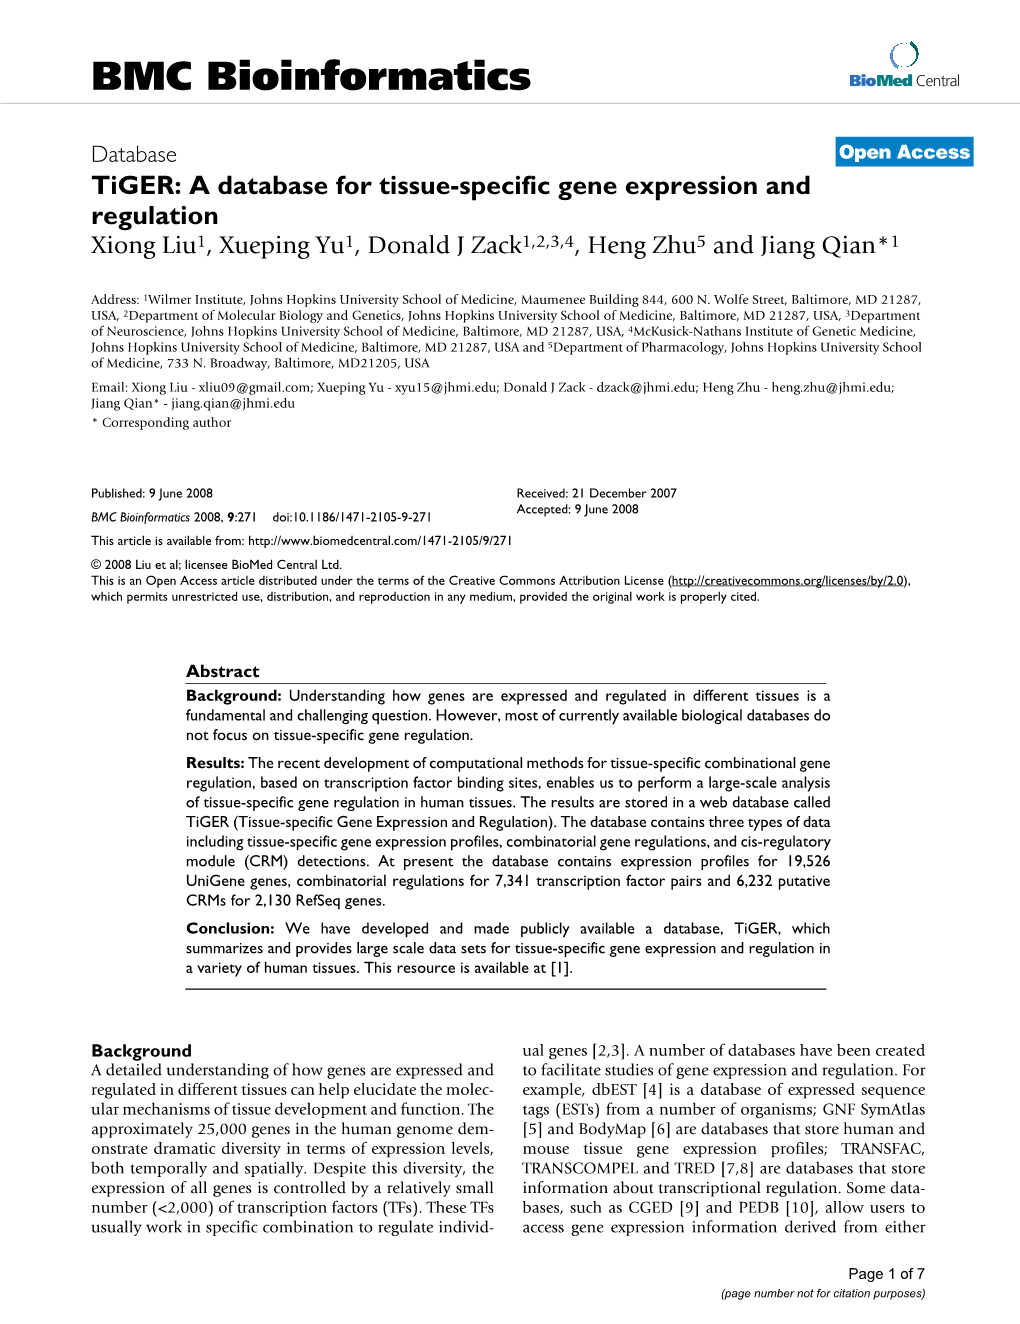 Tiger: a Database for Tissue-Specific Gene Expression and Regulation Xiong Liu1, Xueping Yu1, Donald J Zack1,2,3,4, Heng Zhu5 and Jiang Qian*1